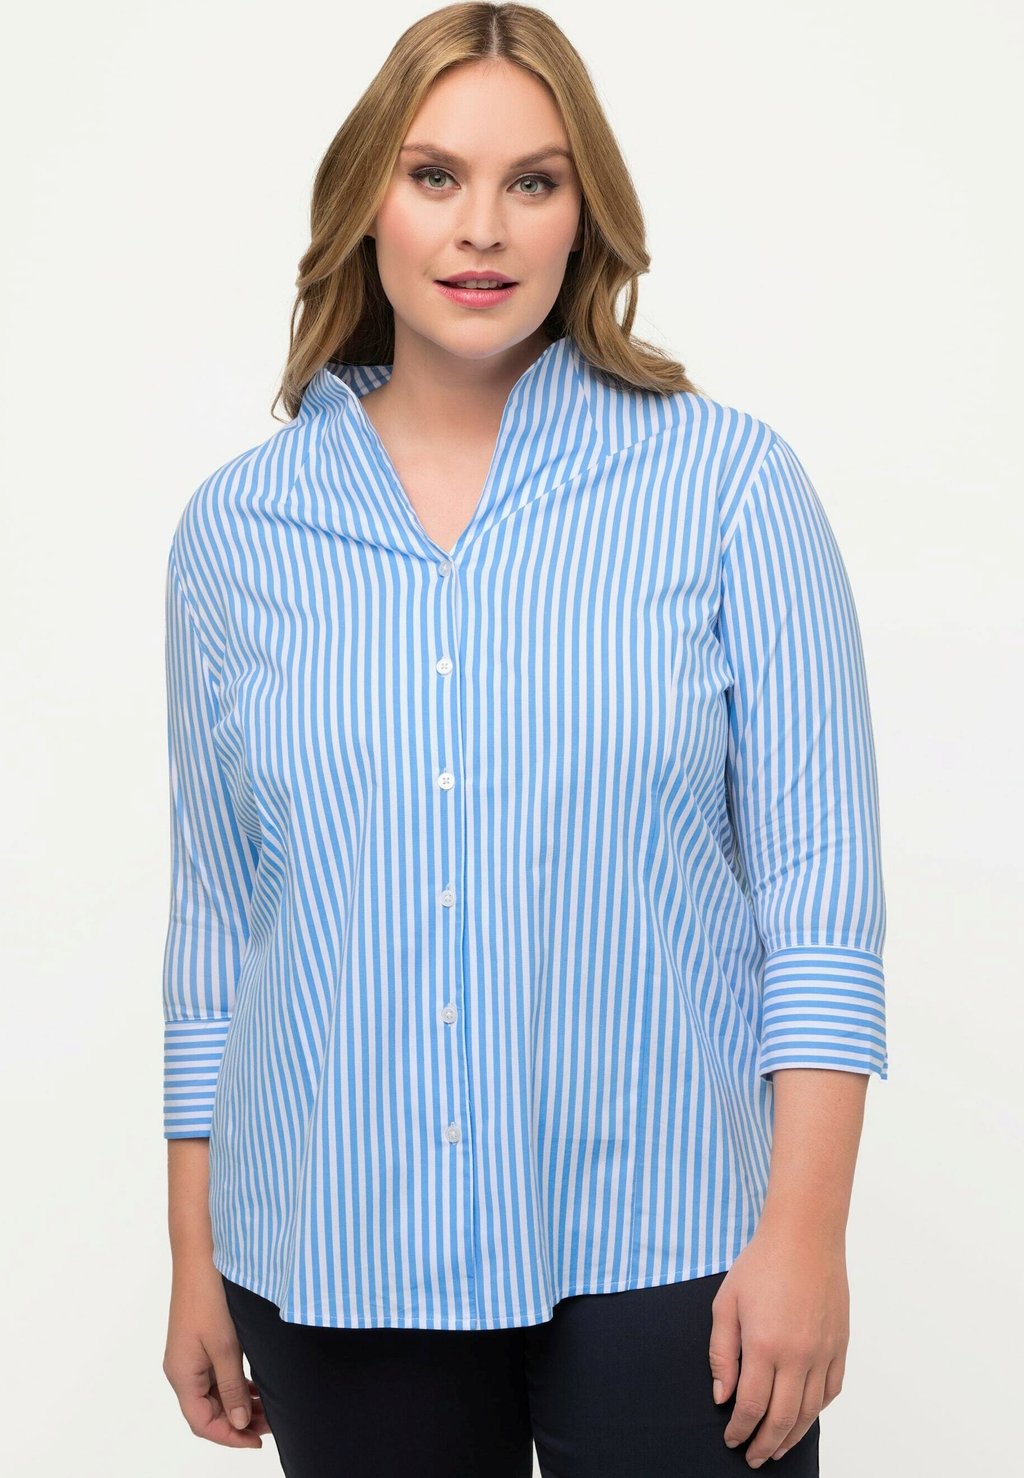 Рубашка Ulla Popken в полоску, голубой/белый